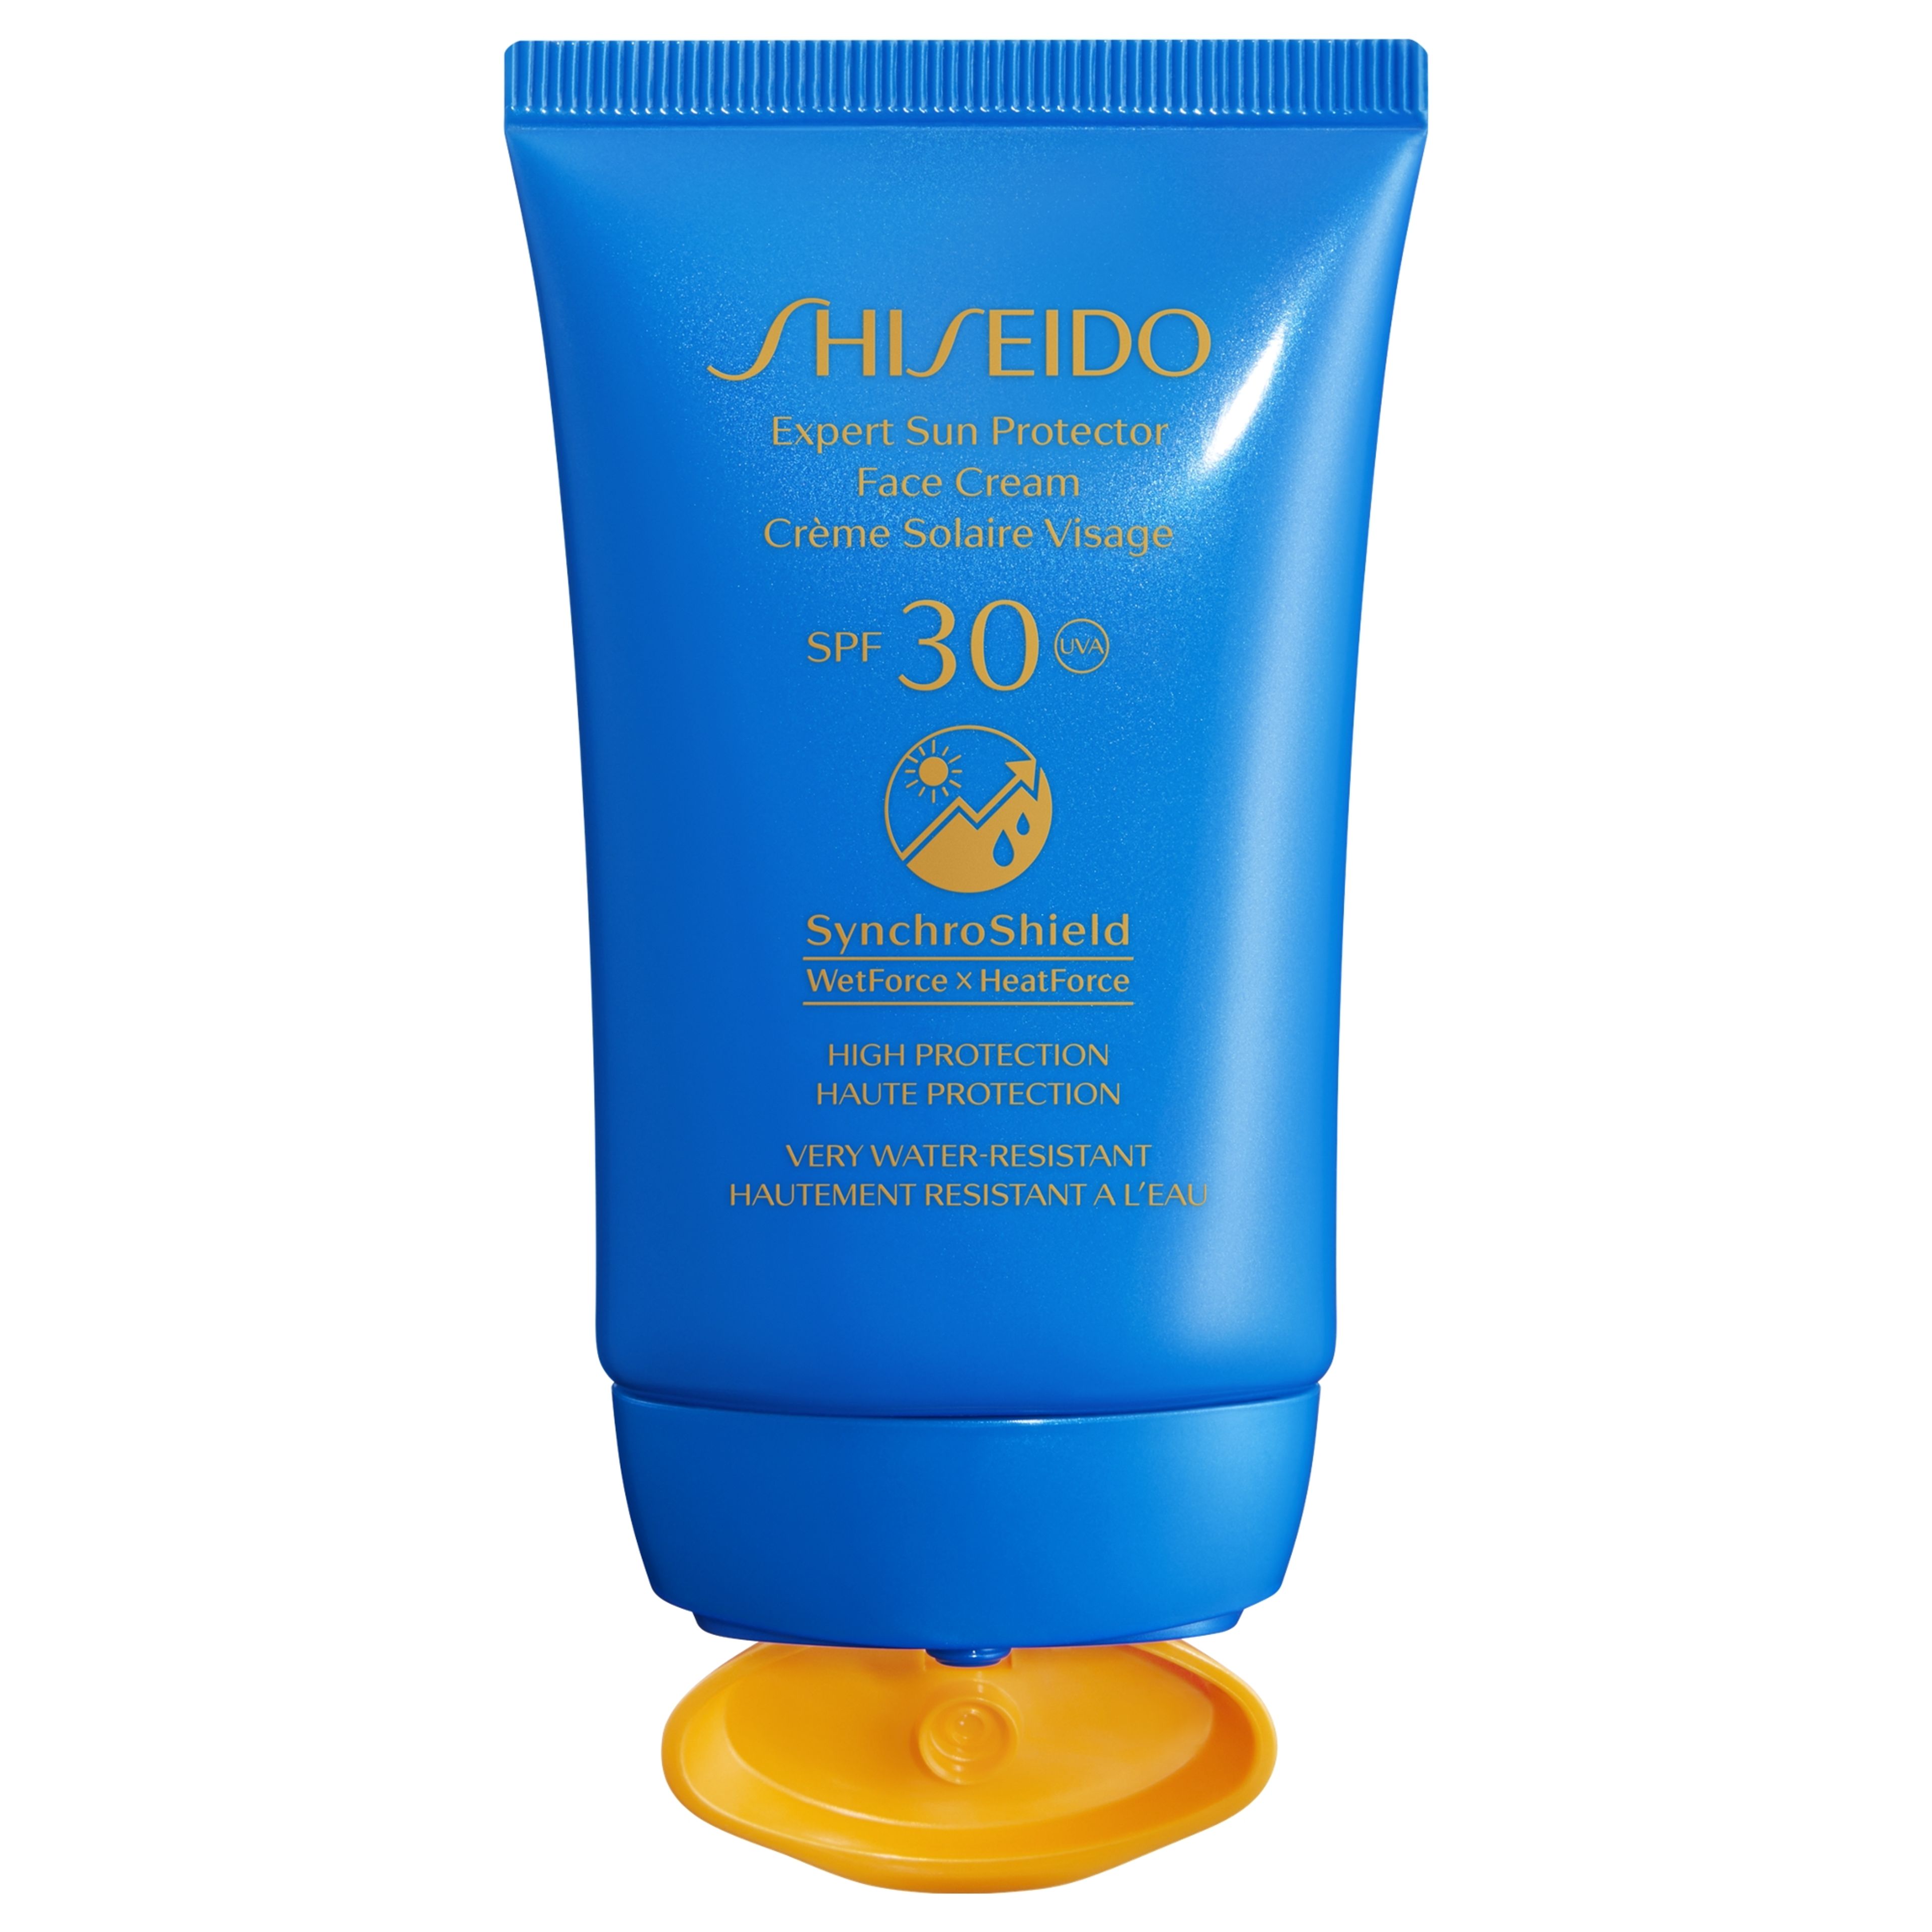 Shiseido Expert Sun Protector
face Cream 
spf30 2